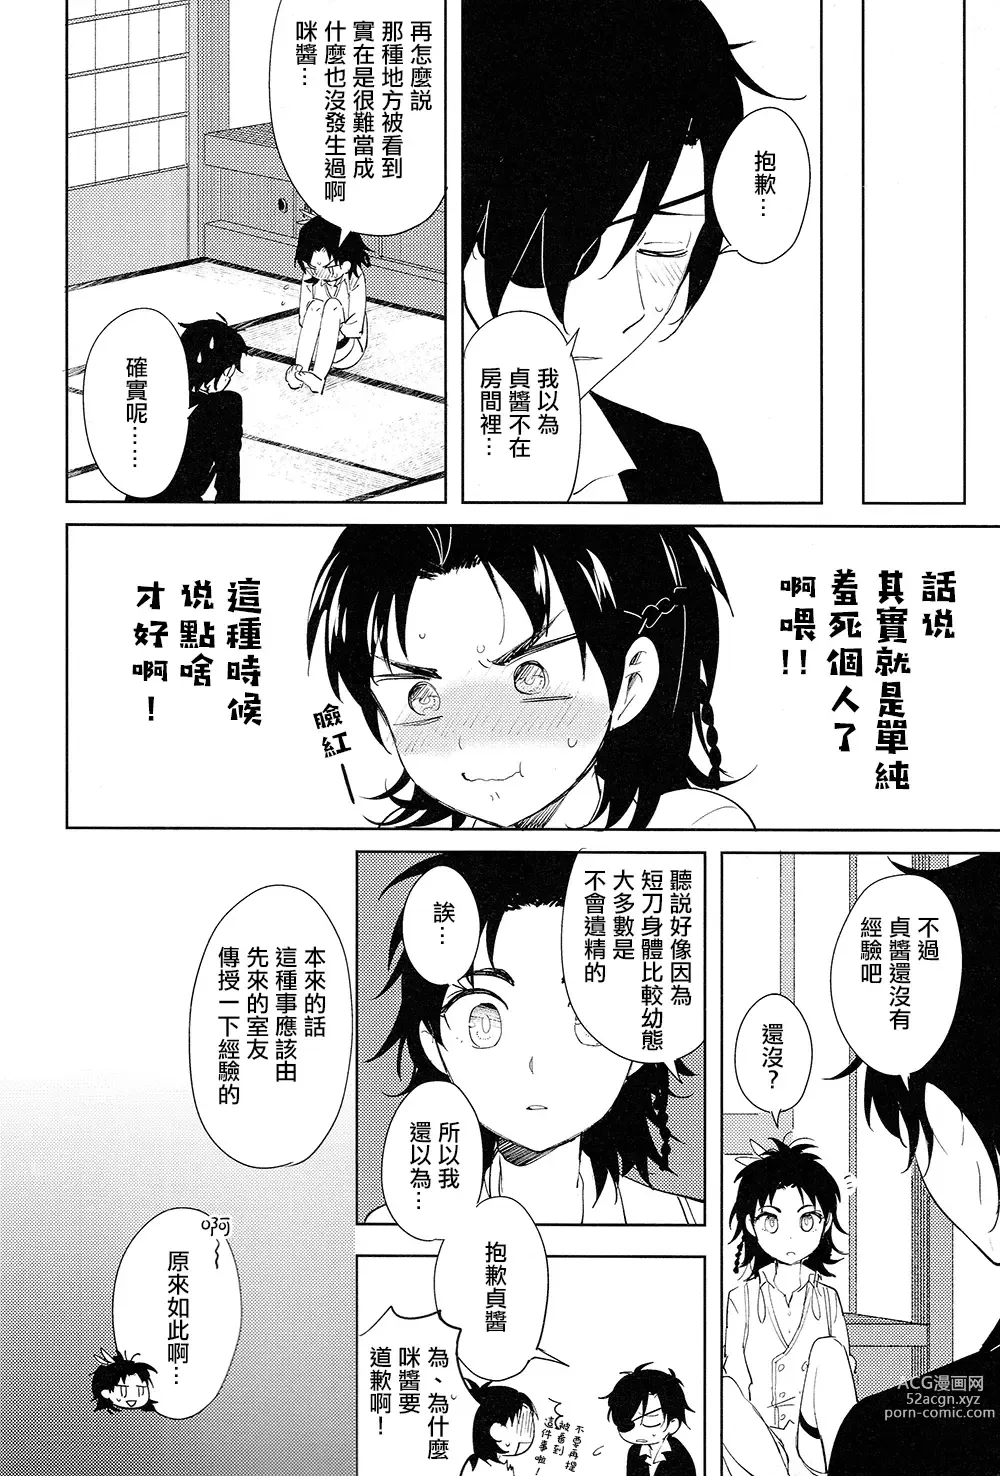 Page 5 of doujinshi 从一个人变成两个人